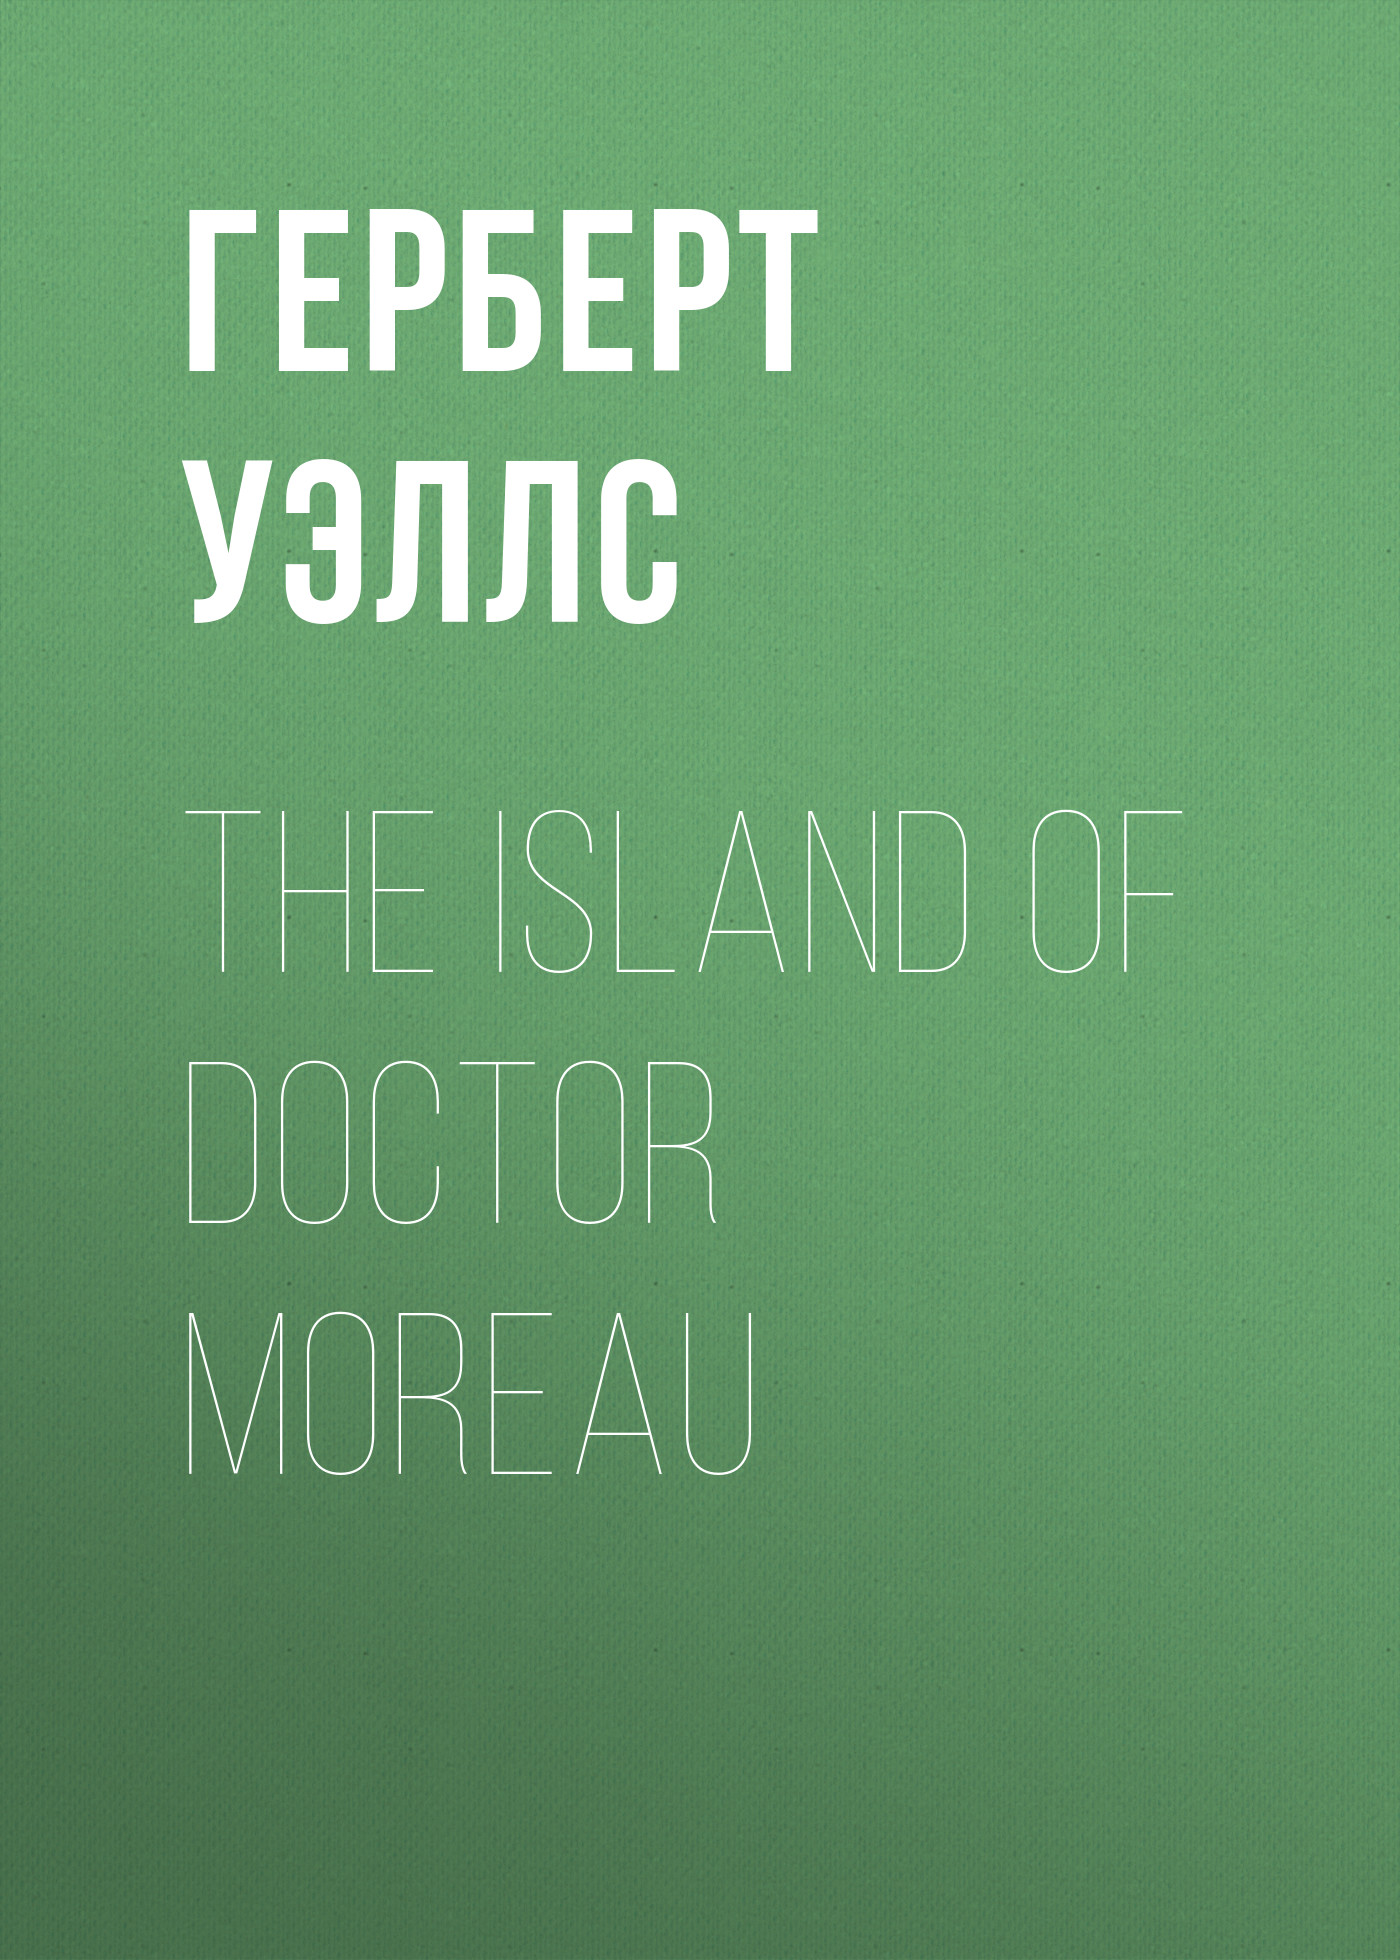 Книга The Island of Doctor Moreau из серии , созданная Герберт Уэллс, может относится к жанру Научная фантастика, Иностранные языки. Стоимость электронной книги The Island of Doctor Moreau с идентификатором 8076247 составляет 0.90 руб.